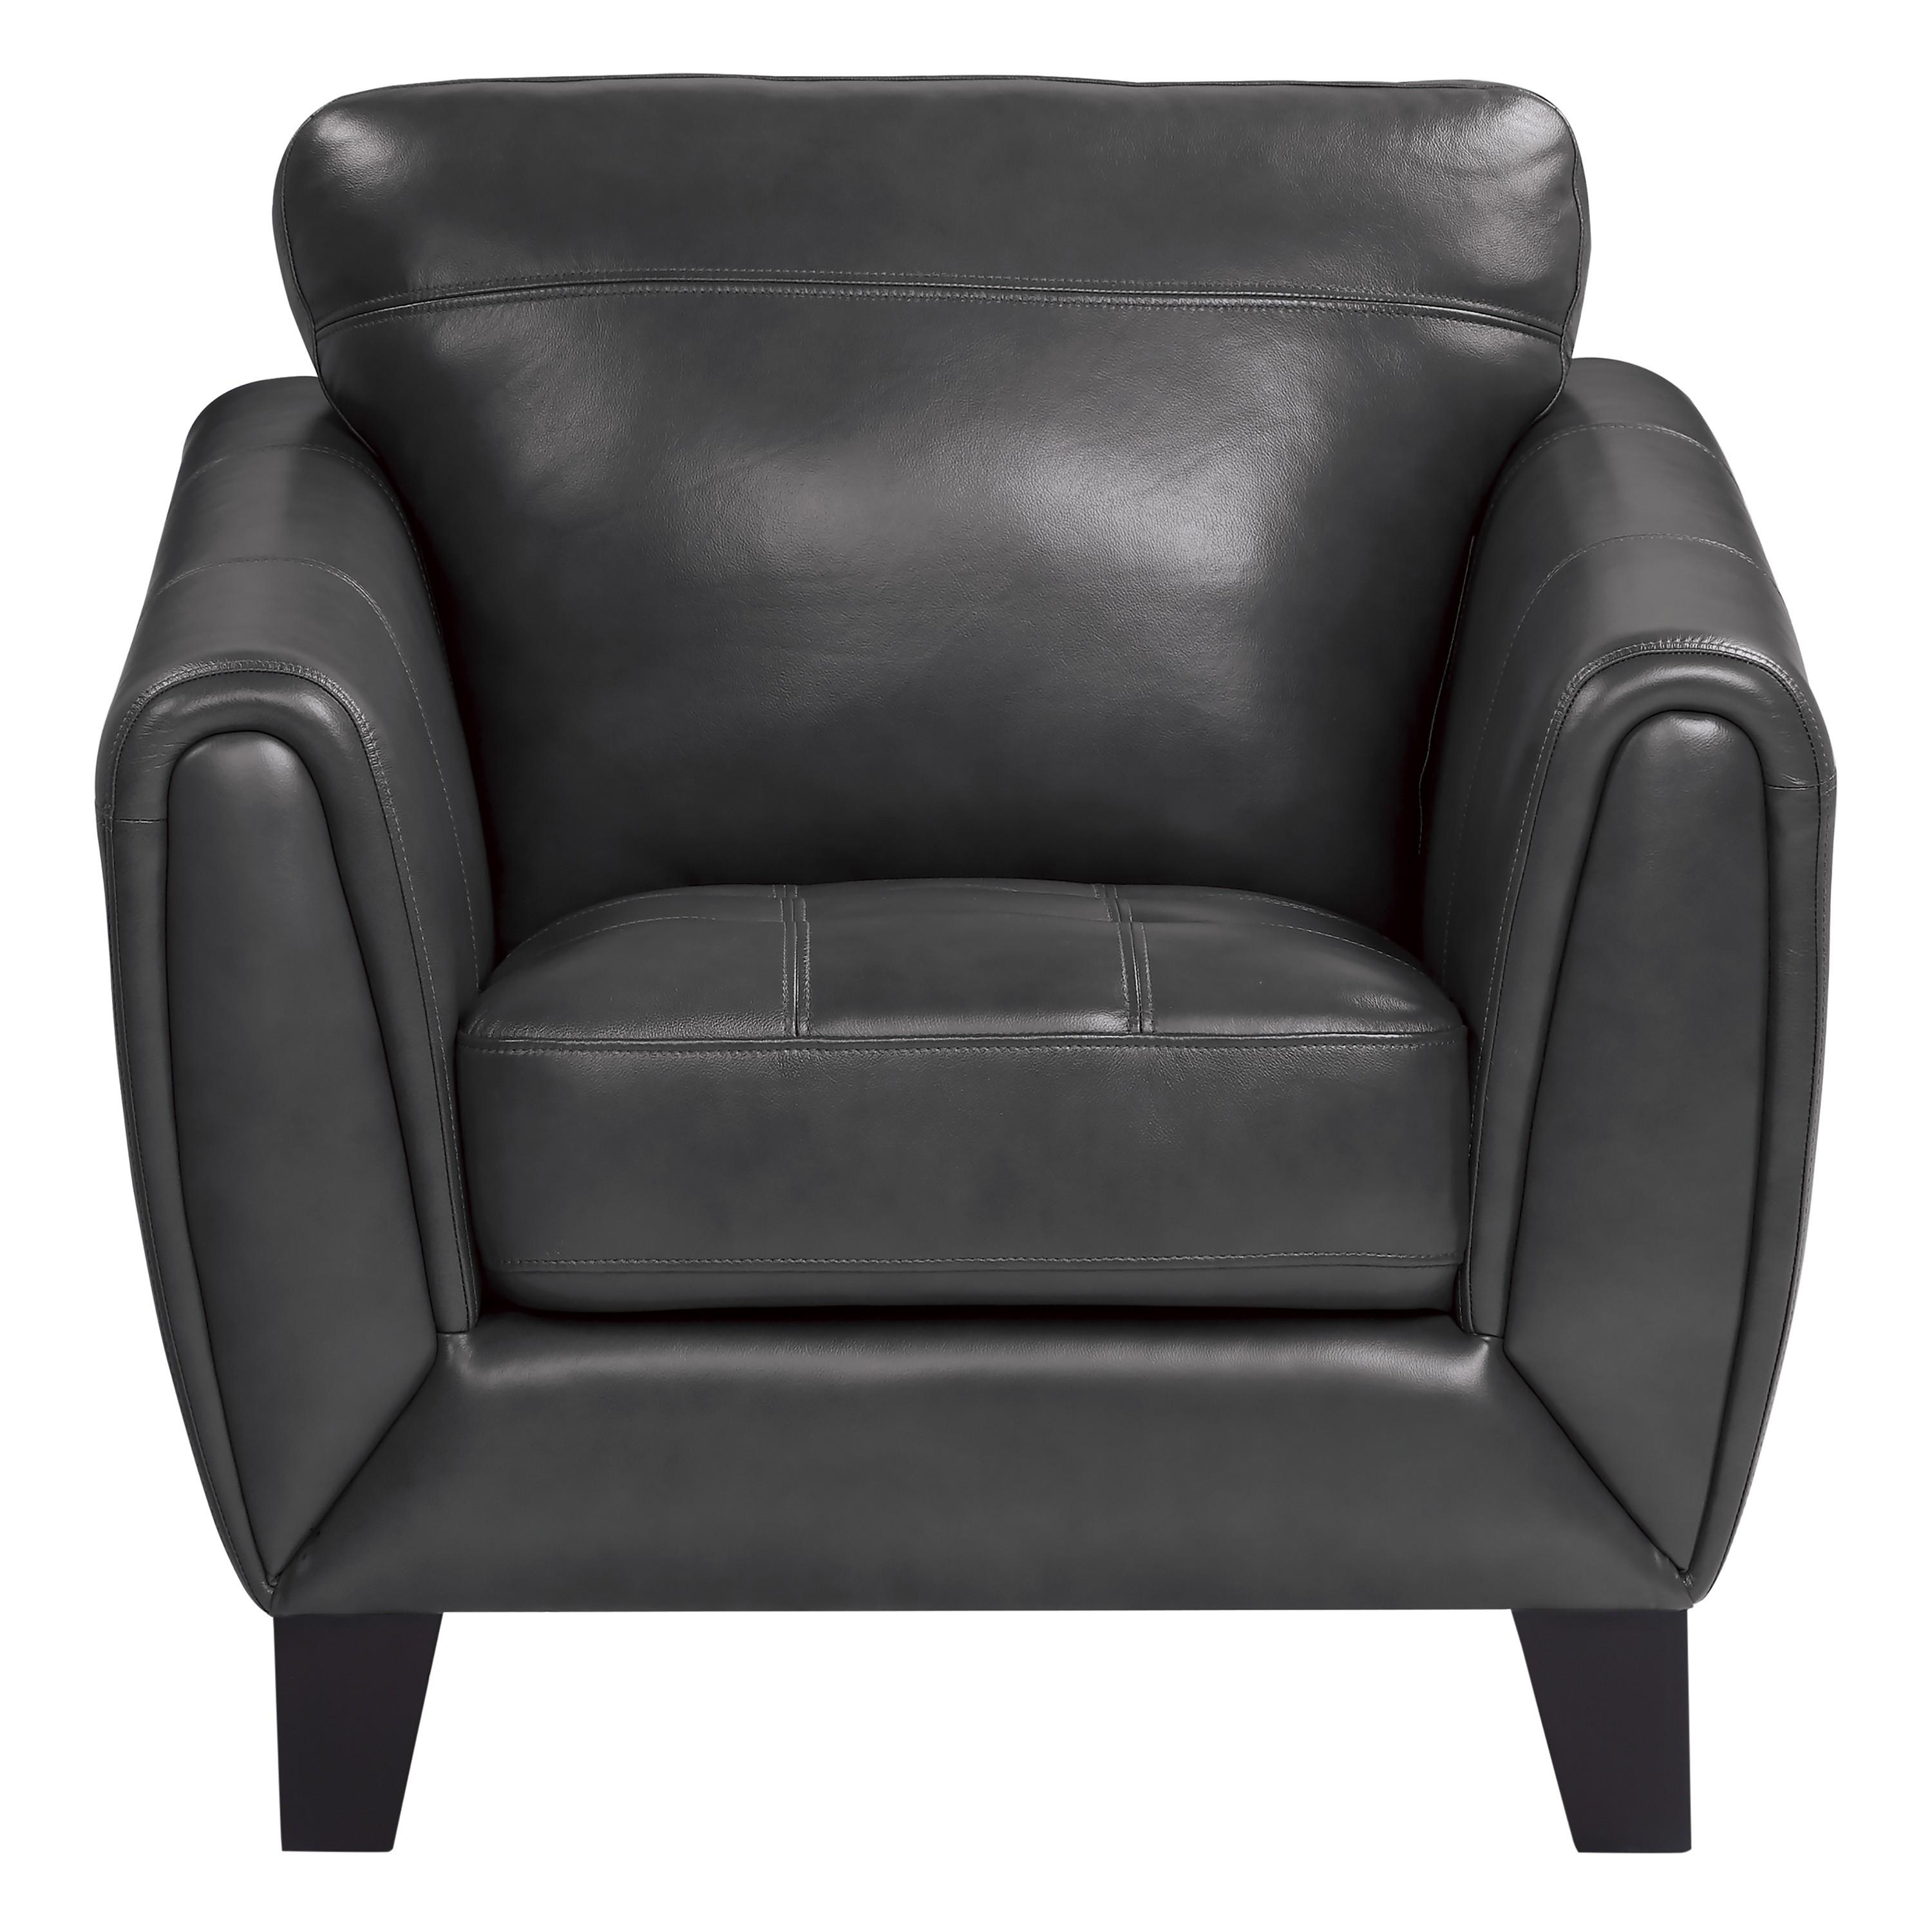 Modern Arm Chair 9460DG-1 Spivey 9460DG-1 in Dark Gray Leather